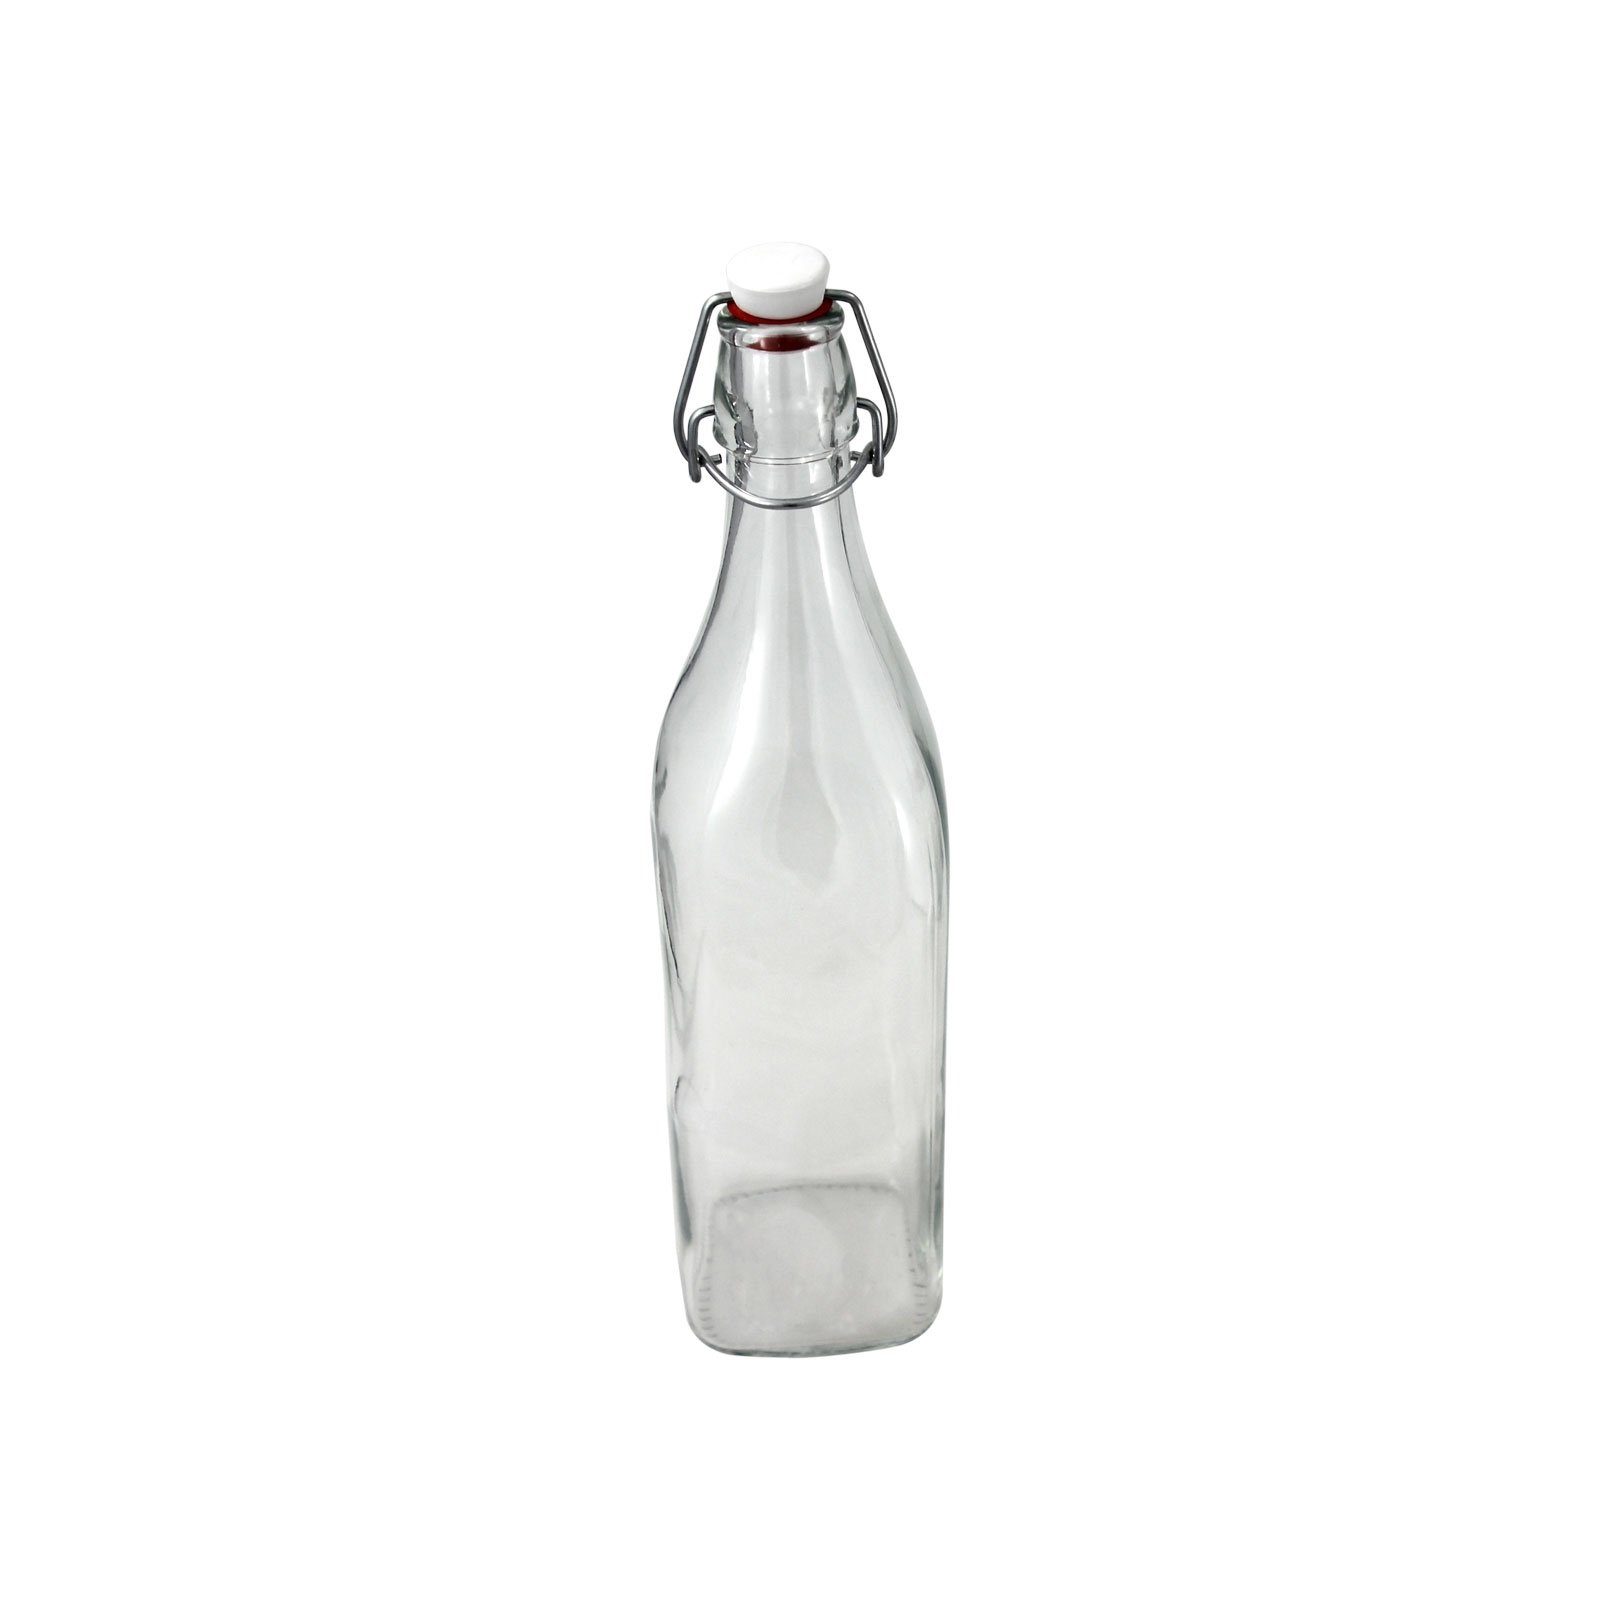 Vorratsglas Bügelverschluss Neuetischkultur mit Glasflasche